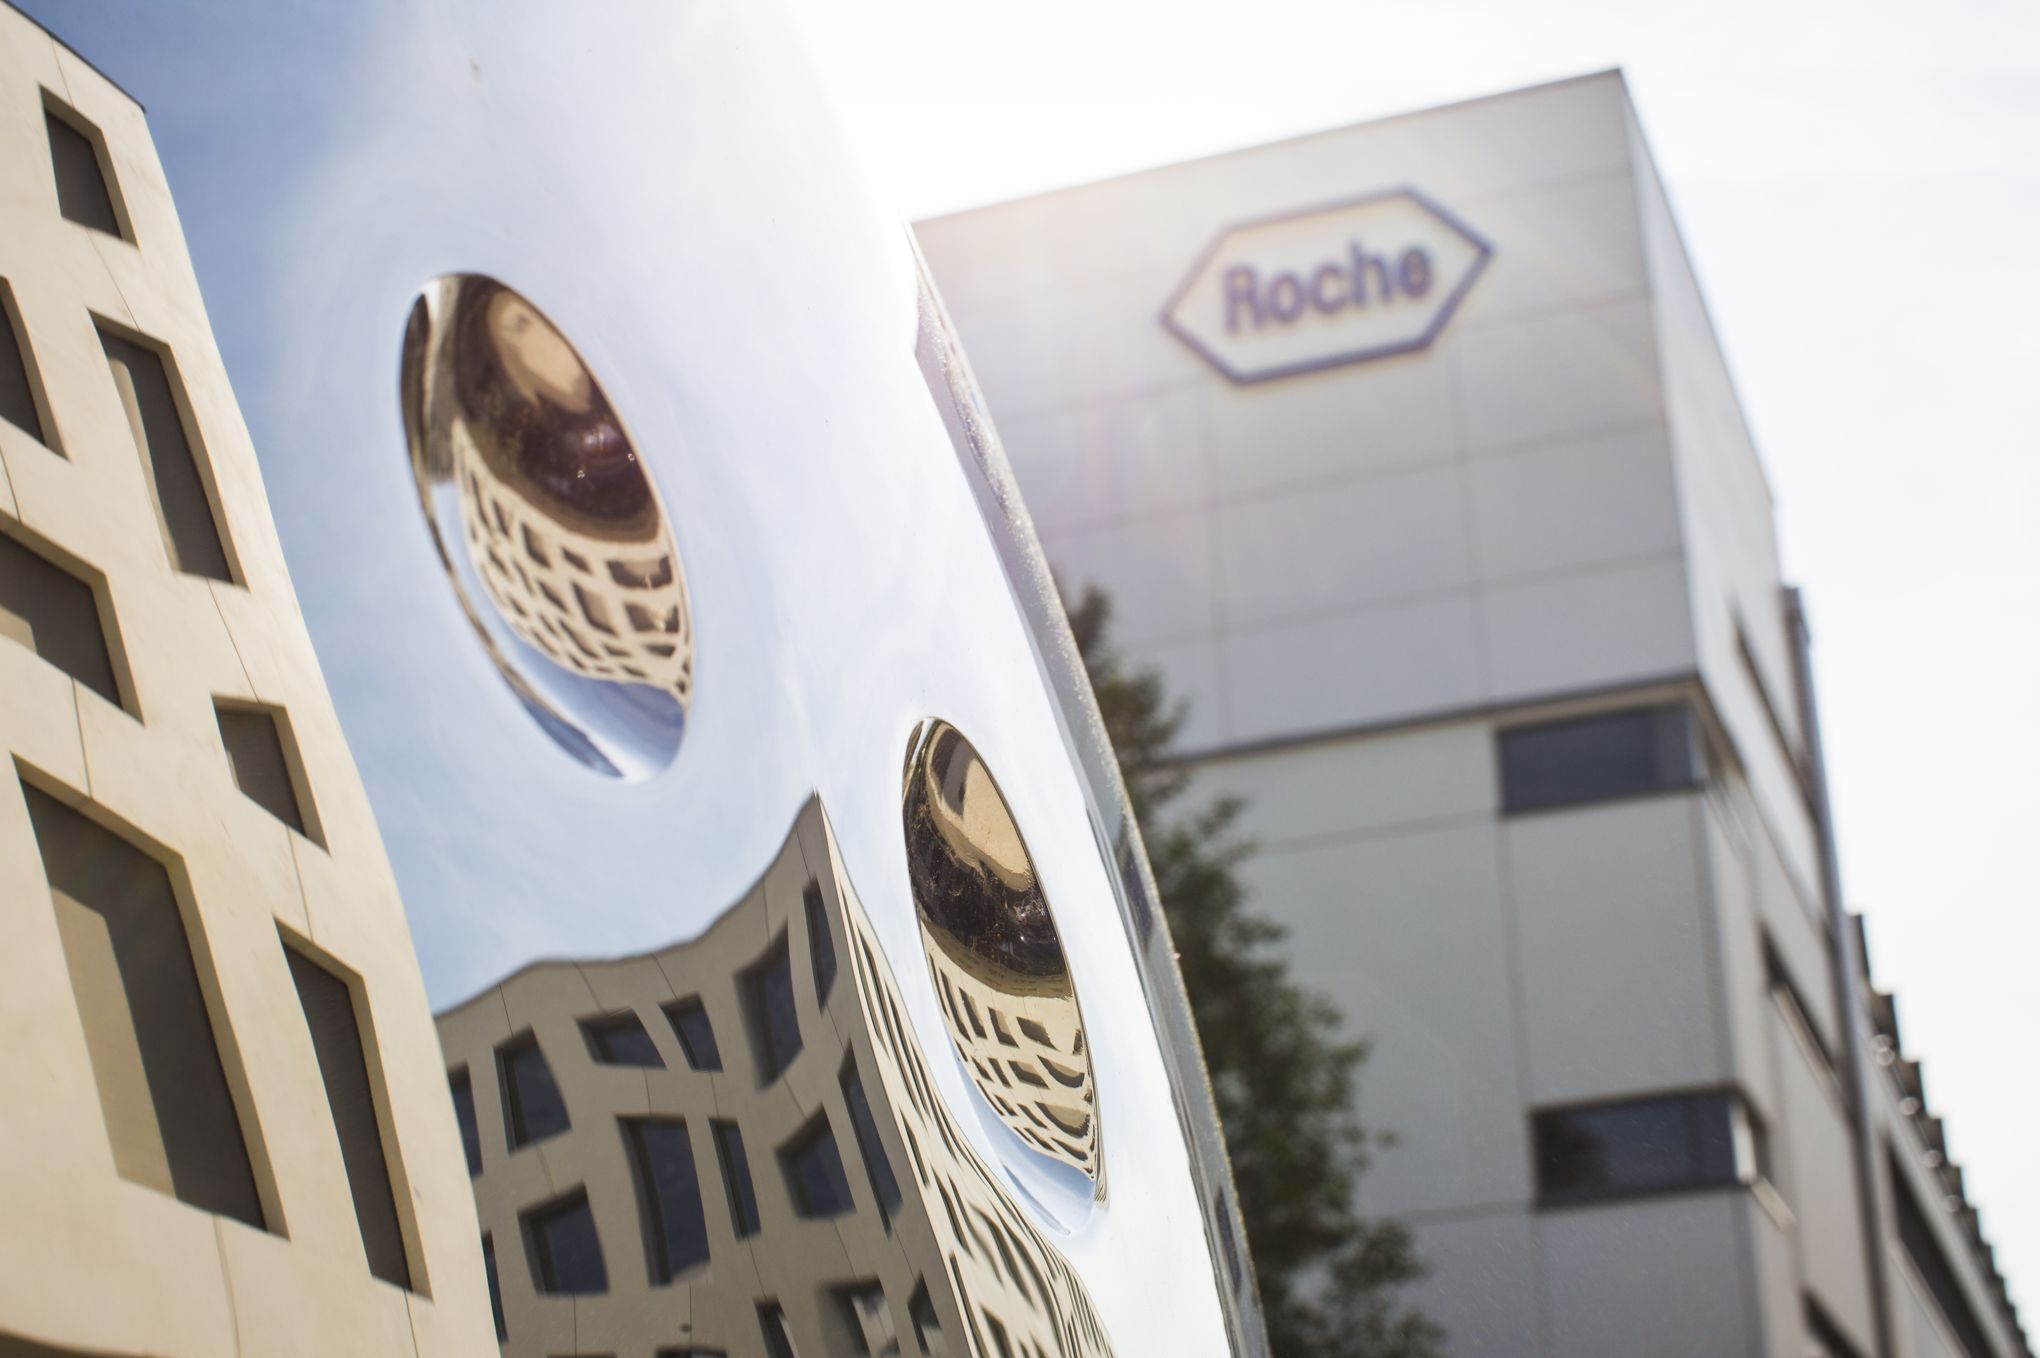 Conseil action – Roche Holding: de meilleures nouvelles cliniques et un renouveau du management en vue